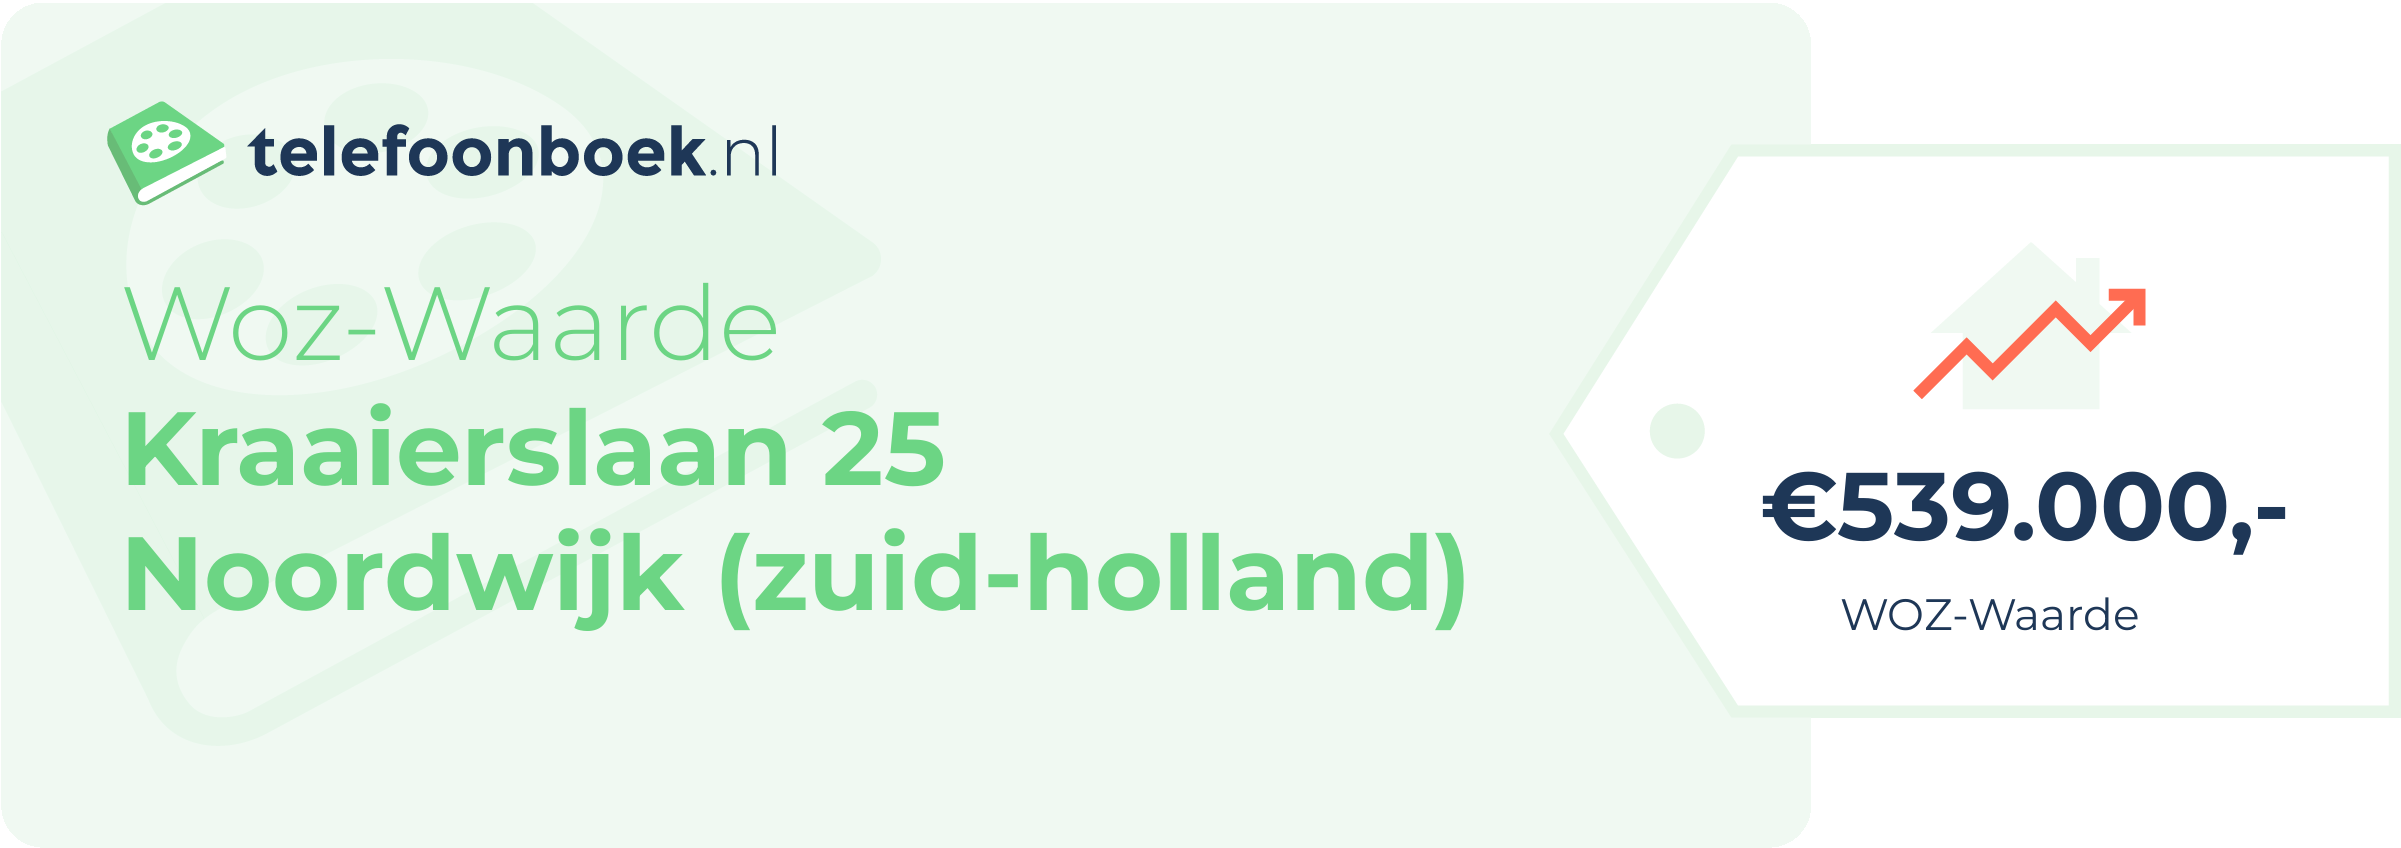 WOZ-waarde Kraaierslaan 25 Noordwijk (Zuid-Holland)